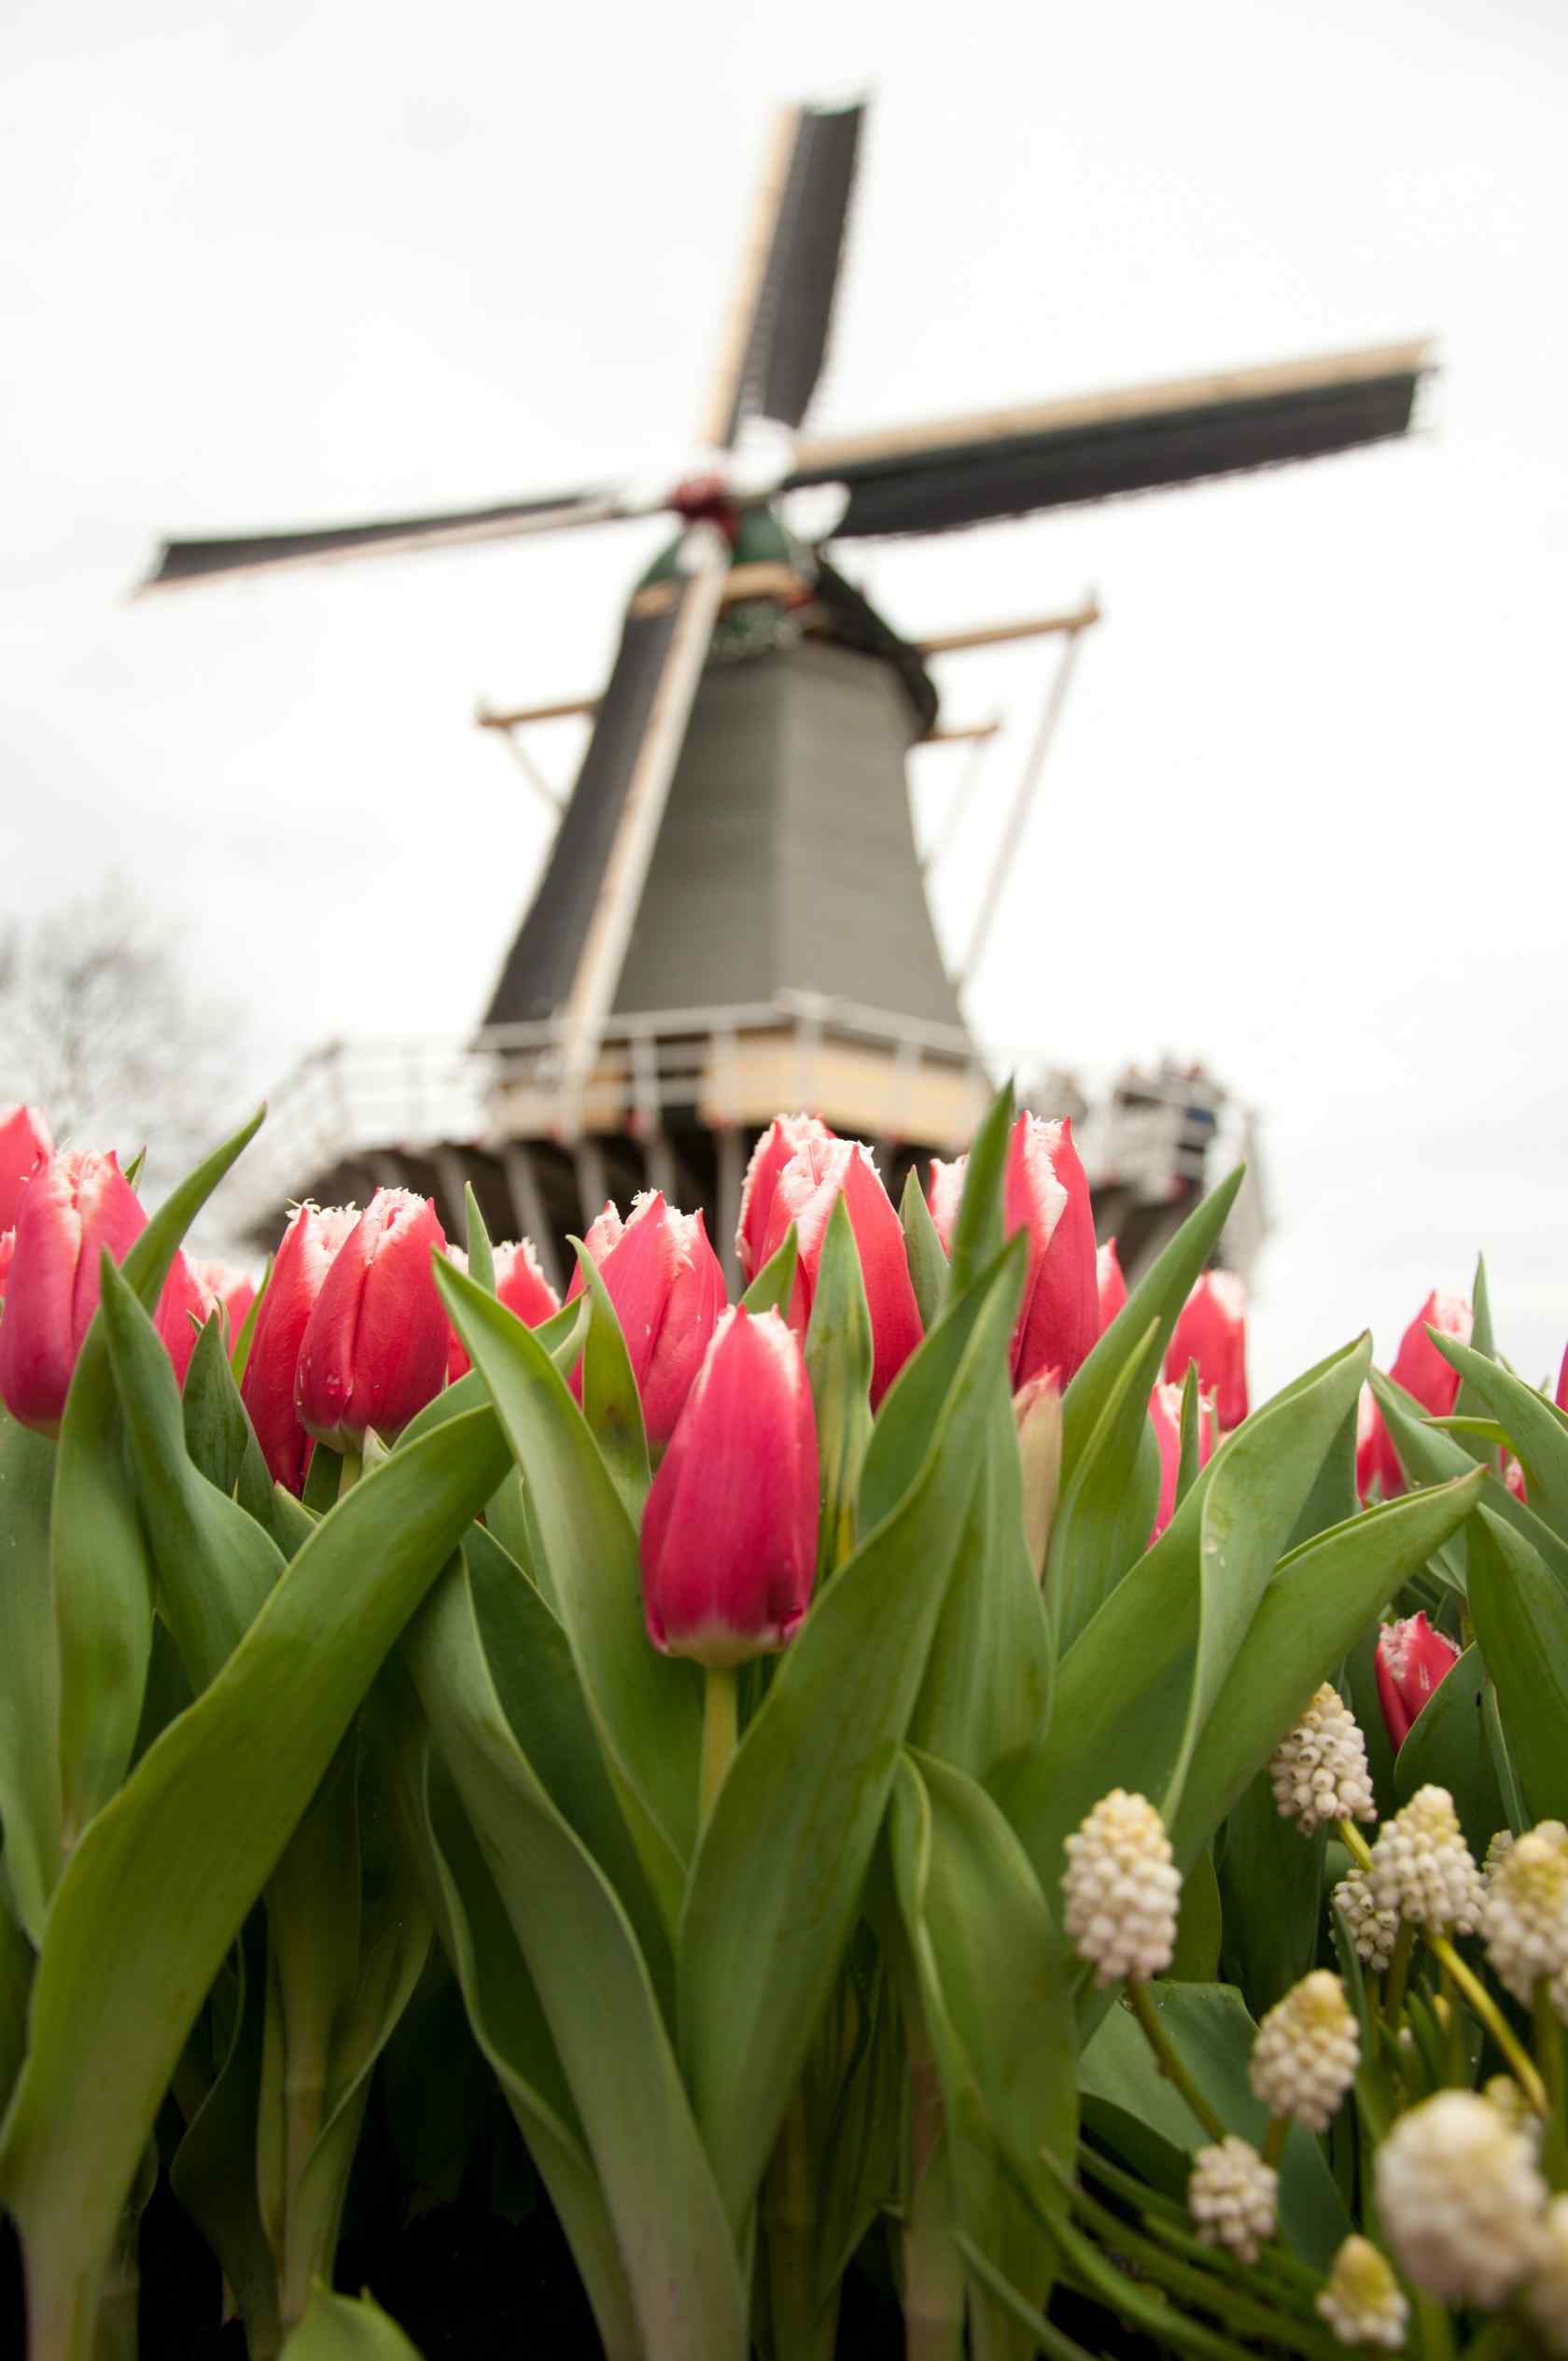 荷兰的美丽郁金香与风车手机壁纸